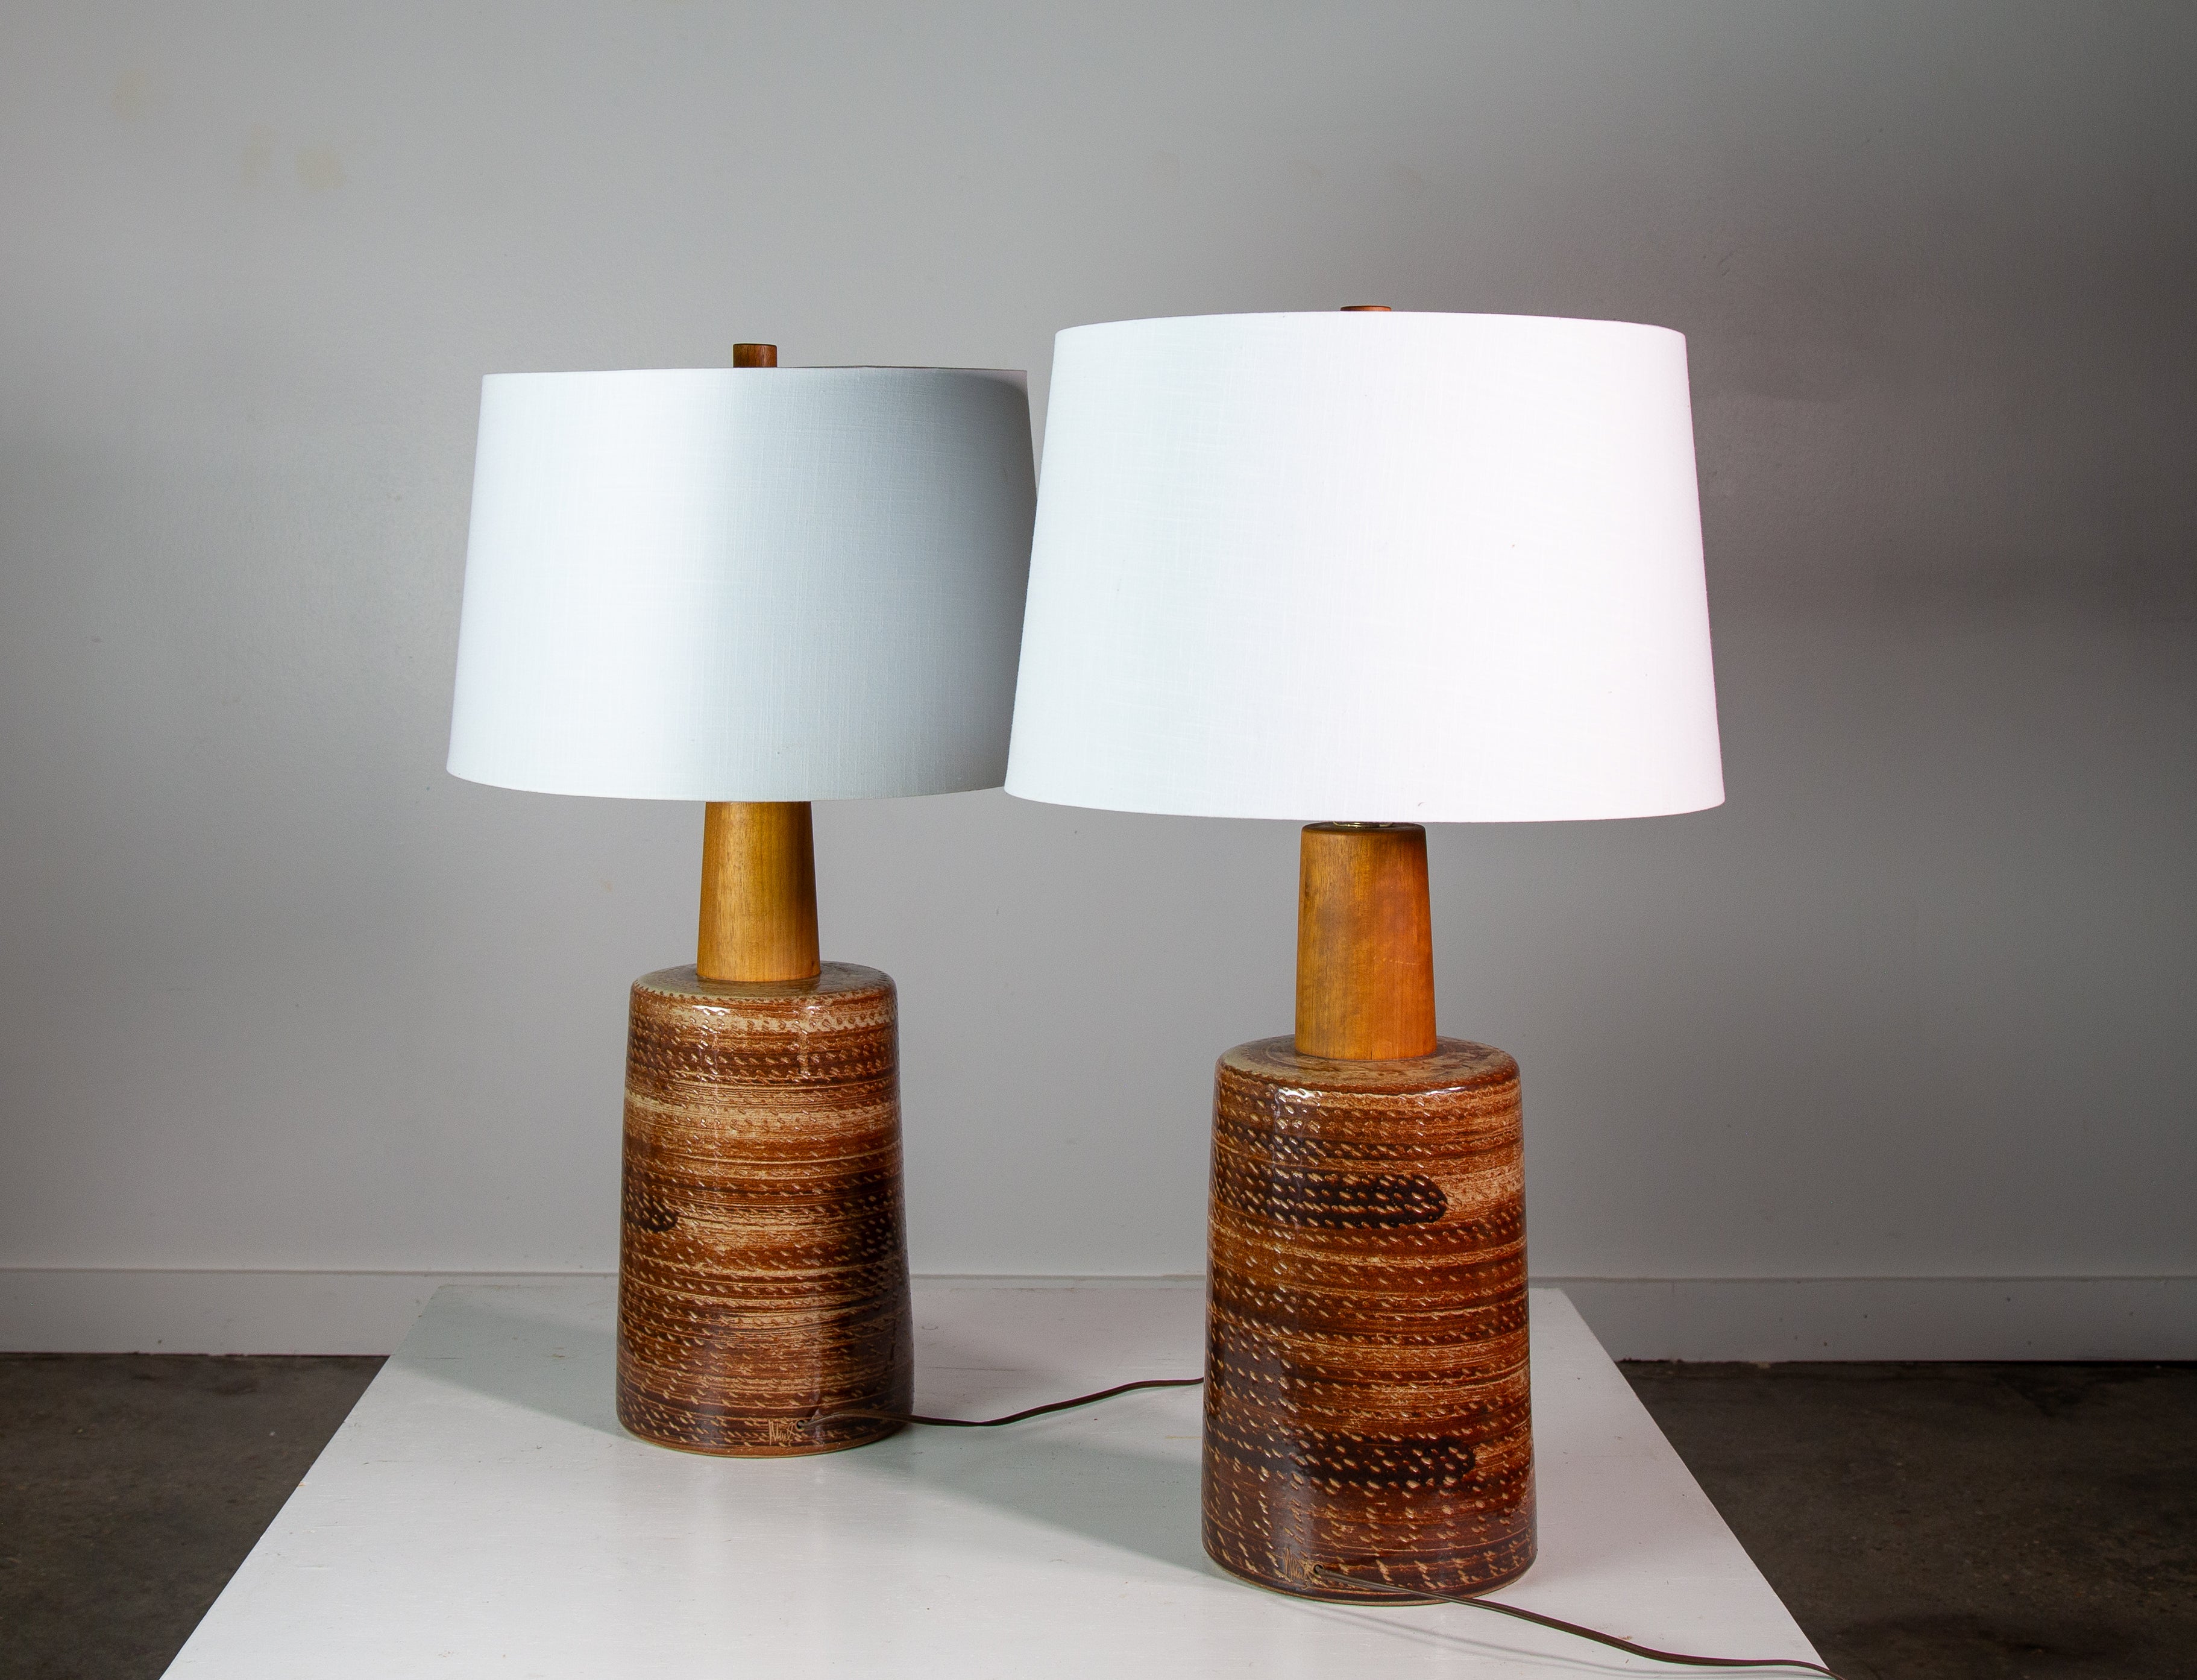 Eine Lampe mit hohem Sammlerwert aus den 1960er Jahren, entworfen von Jane und Gordon Martz von Marshall Studios in Veedersburg, Indiana. Diese Lampen sind sehr begehrt und tauchen in Designs auf der ganzen Welt auf. Diese Lampen sind eine Mischung